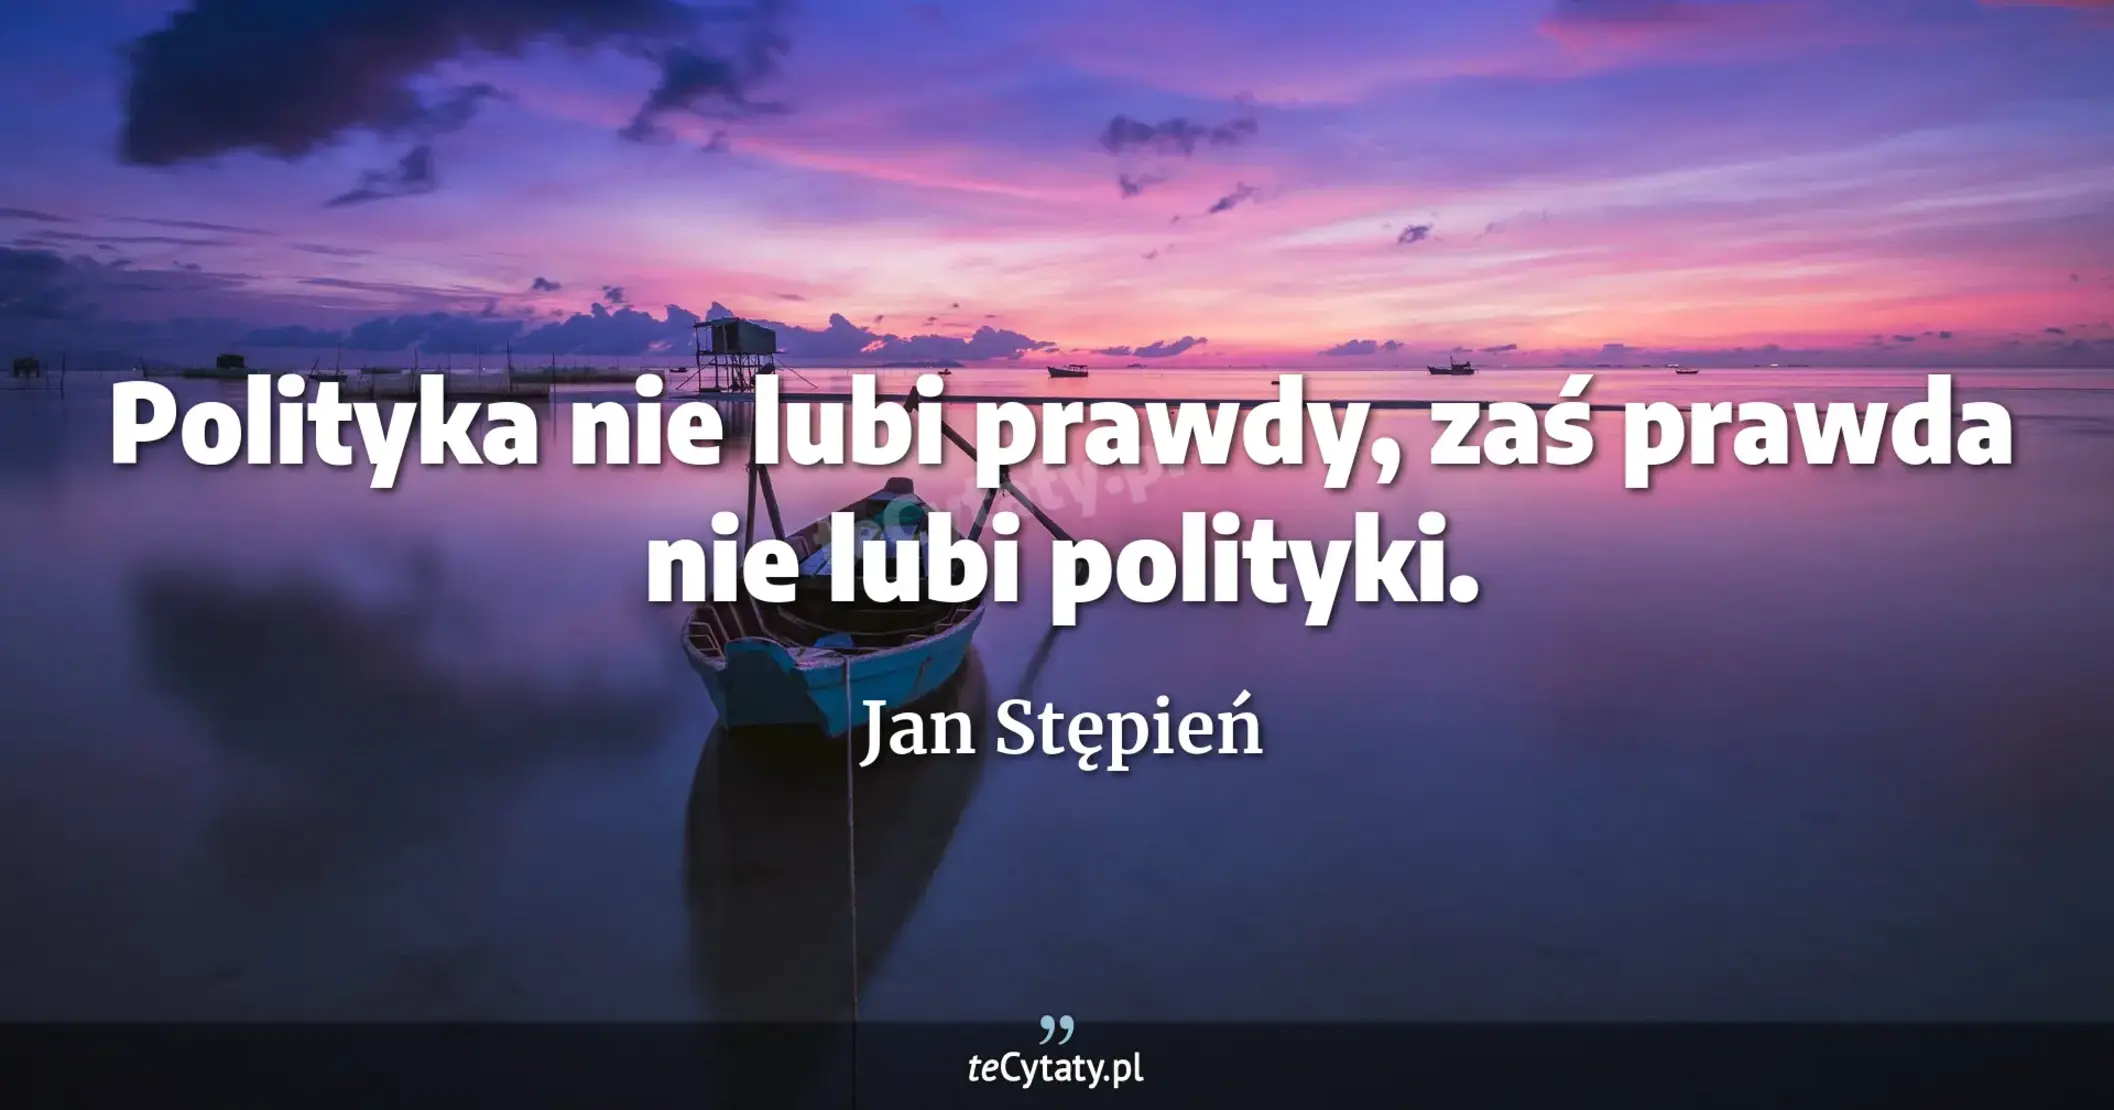 Polityka nie lubi prawdy, zaś prawda nie lubi polityki. - Jan Stępień